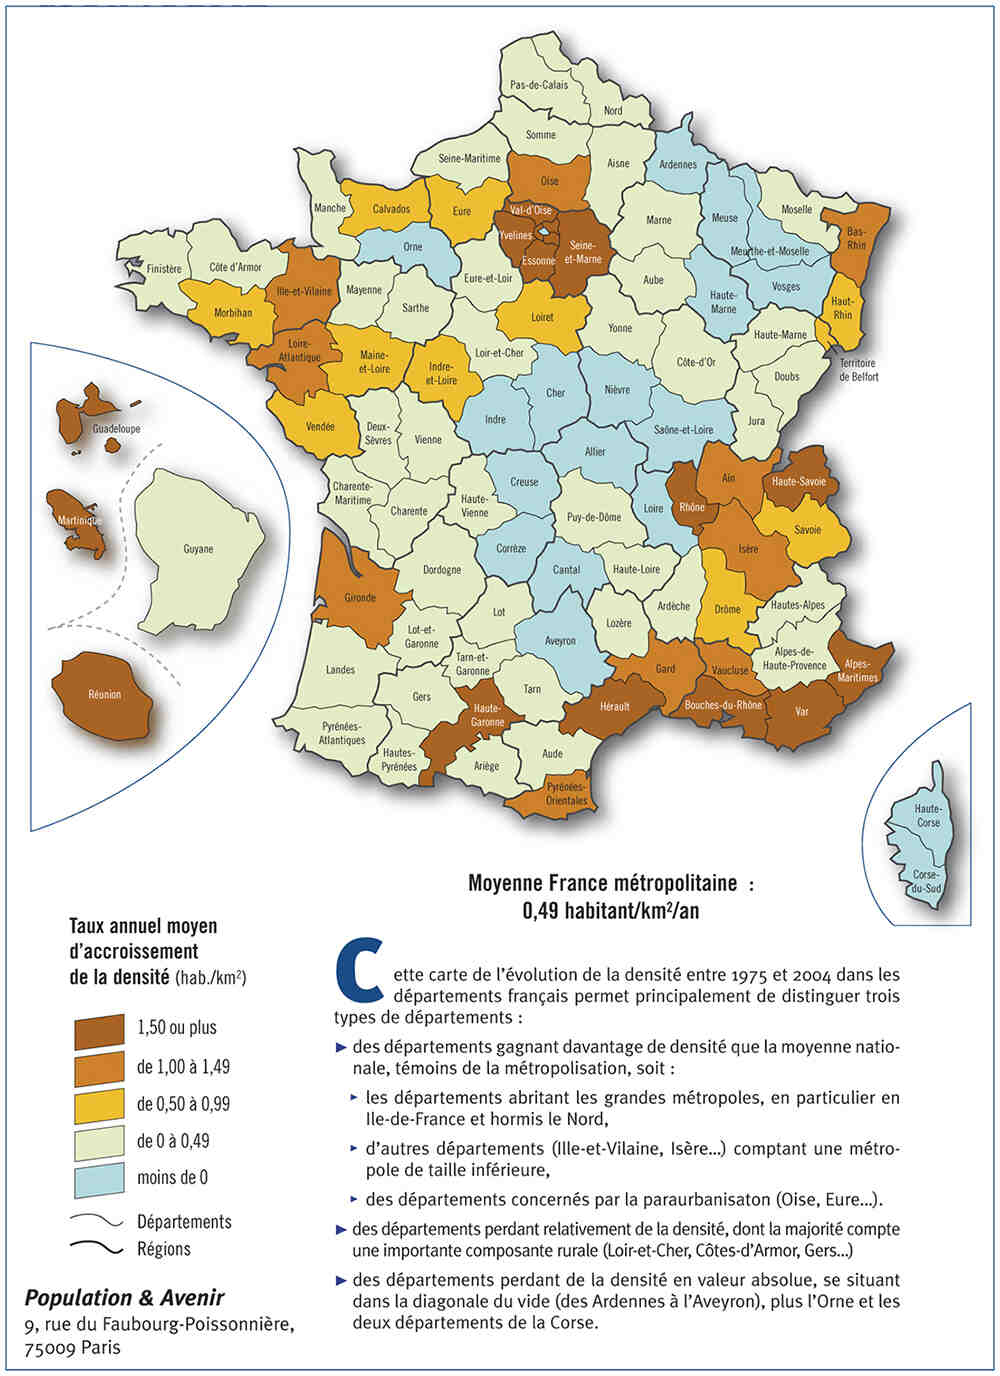 Quels sont les départements les plus peuplés de France?